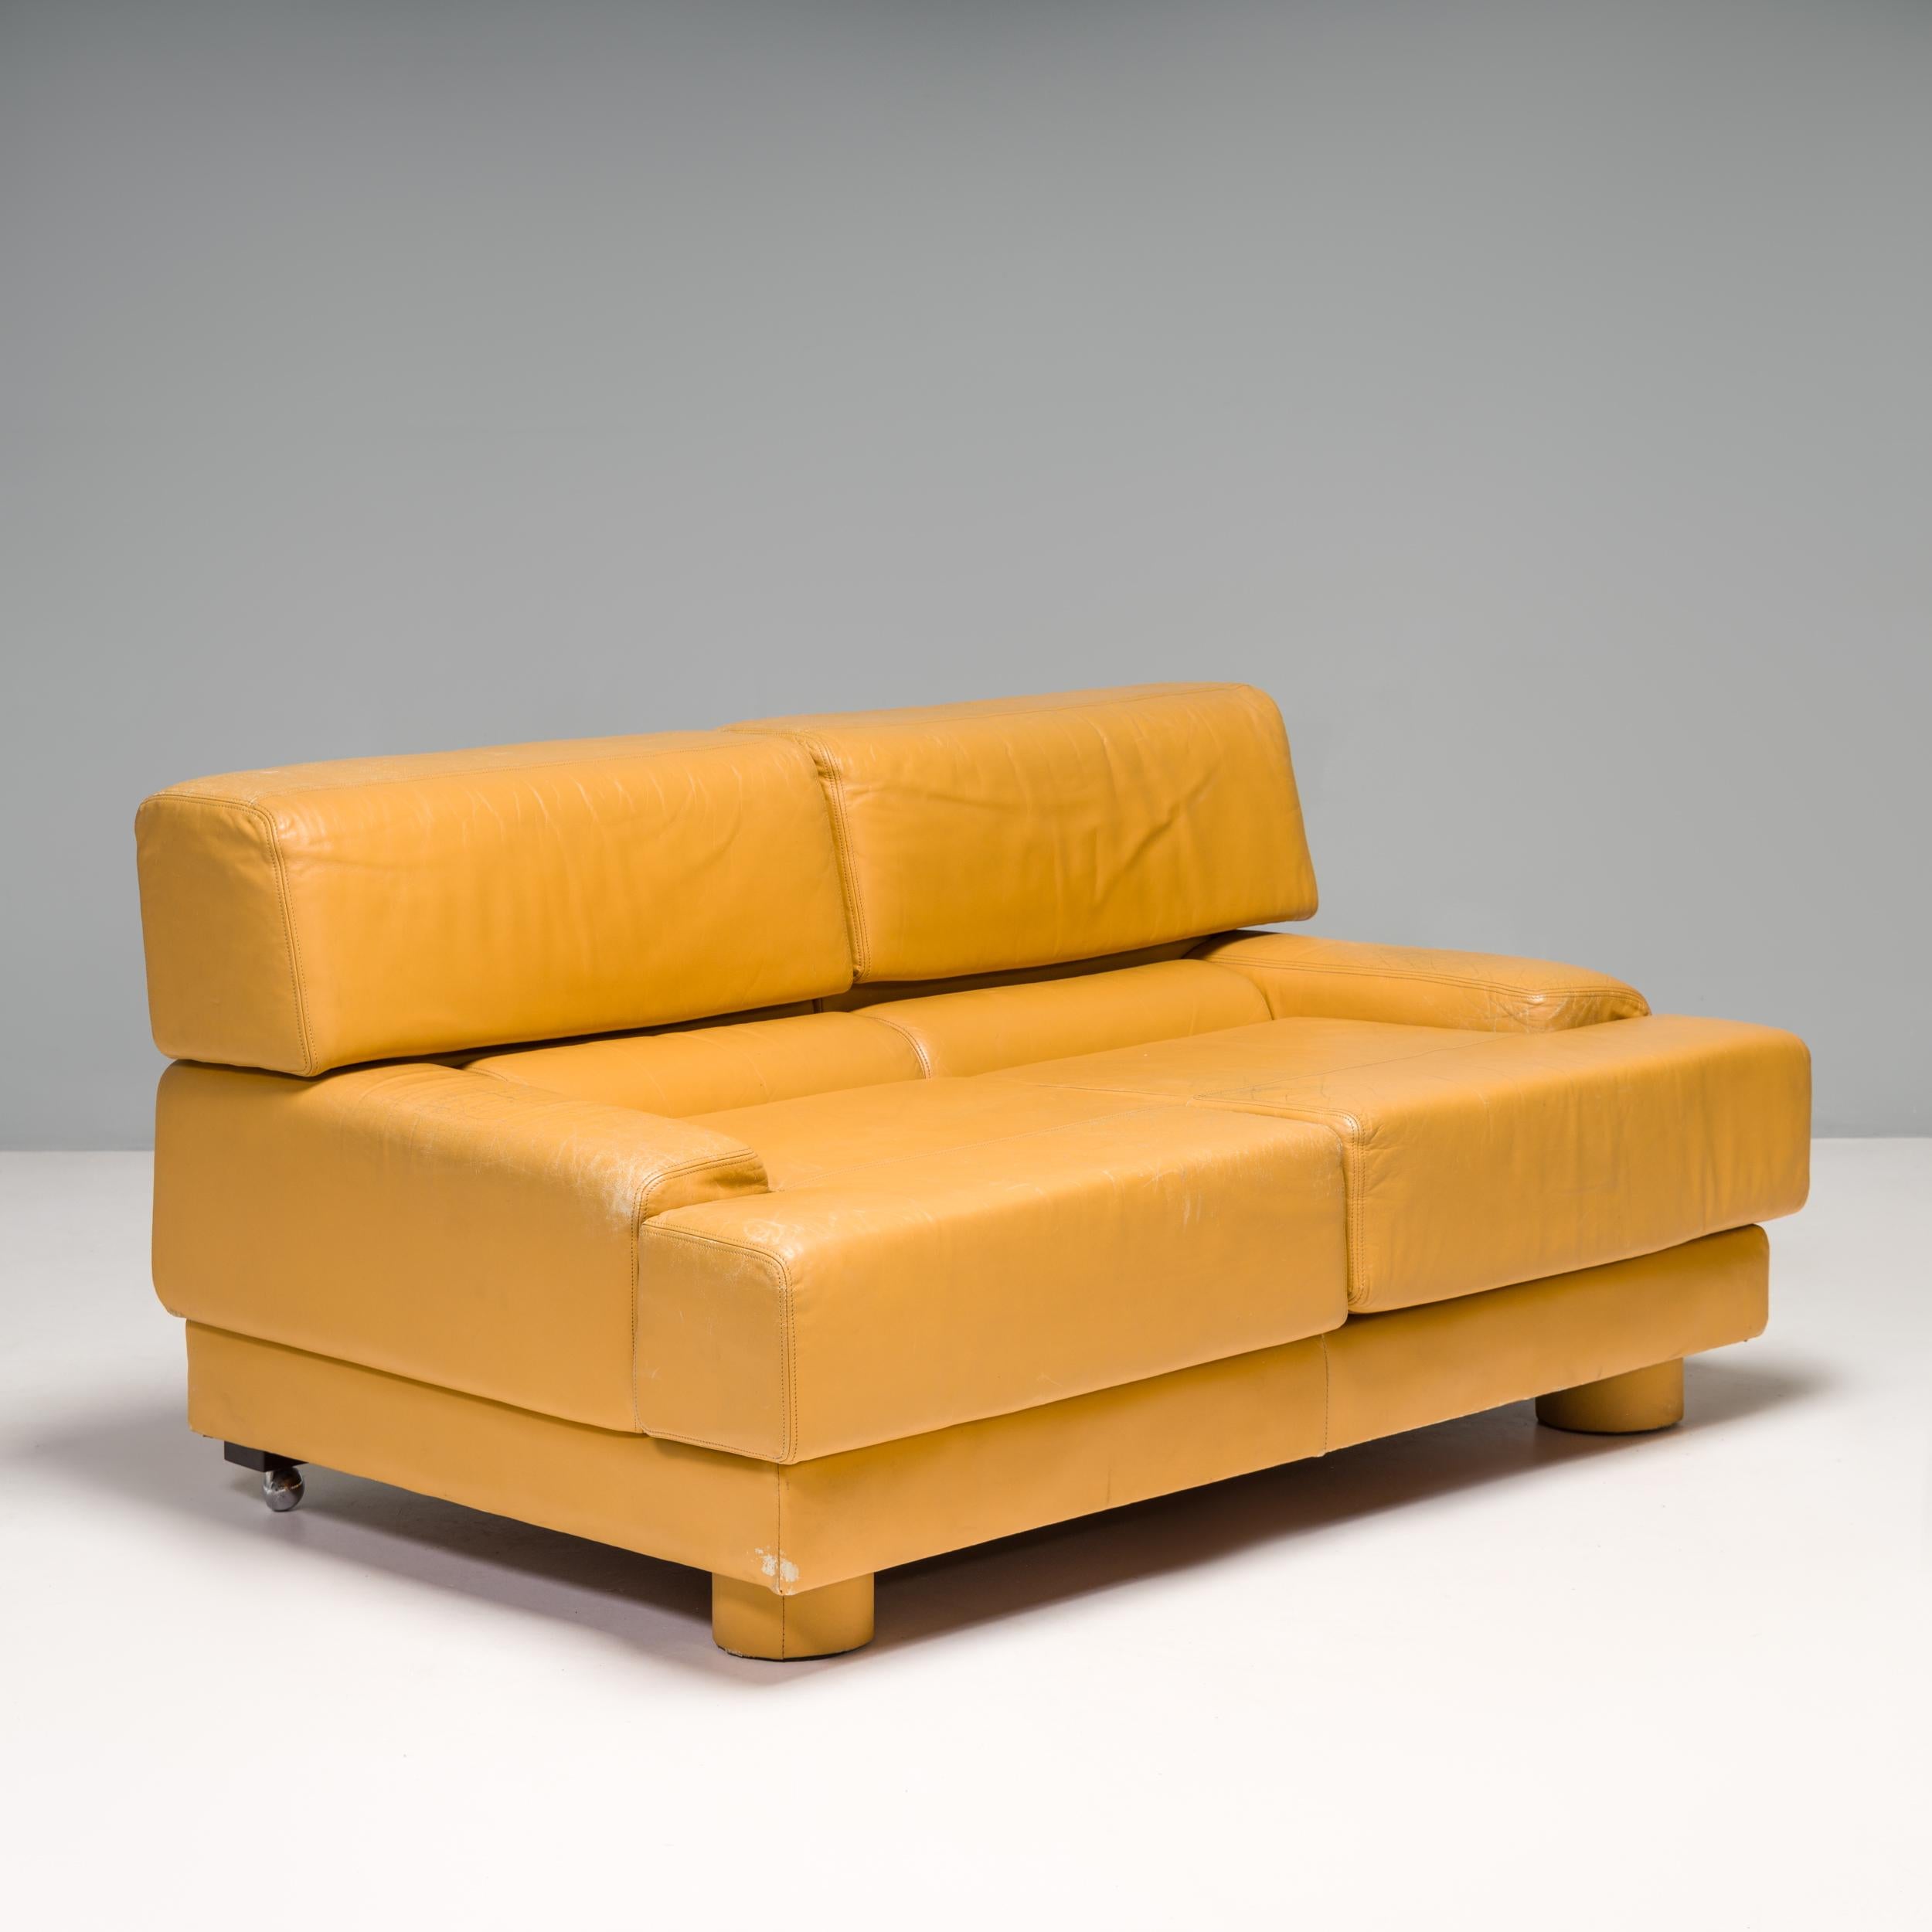 Dieses ursprünglich von Percival Lafer entworfene und von LAFER in São Paulo hergestellte Sofa aus den 1960er Jahren ist ein fantastisches Beispiel für brasilianisches Design aus der Mitte des Jahrhunderts.

Das Sofa mit seiner kastenförmigen